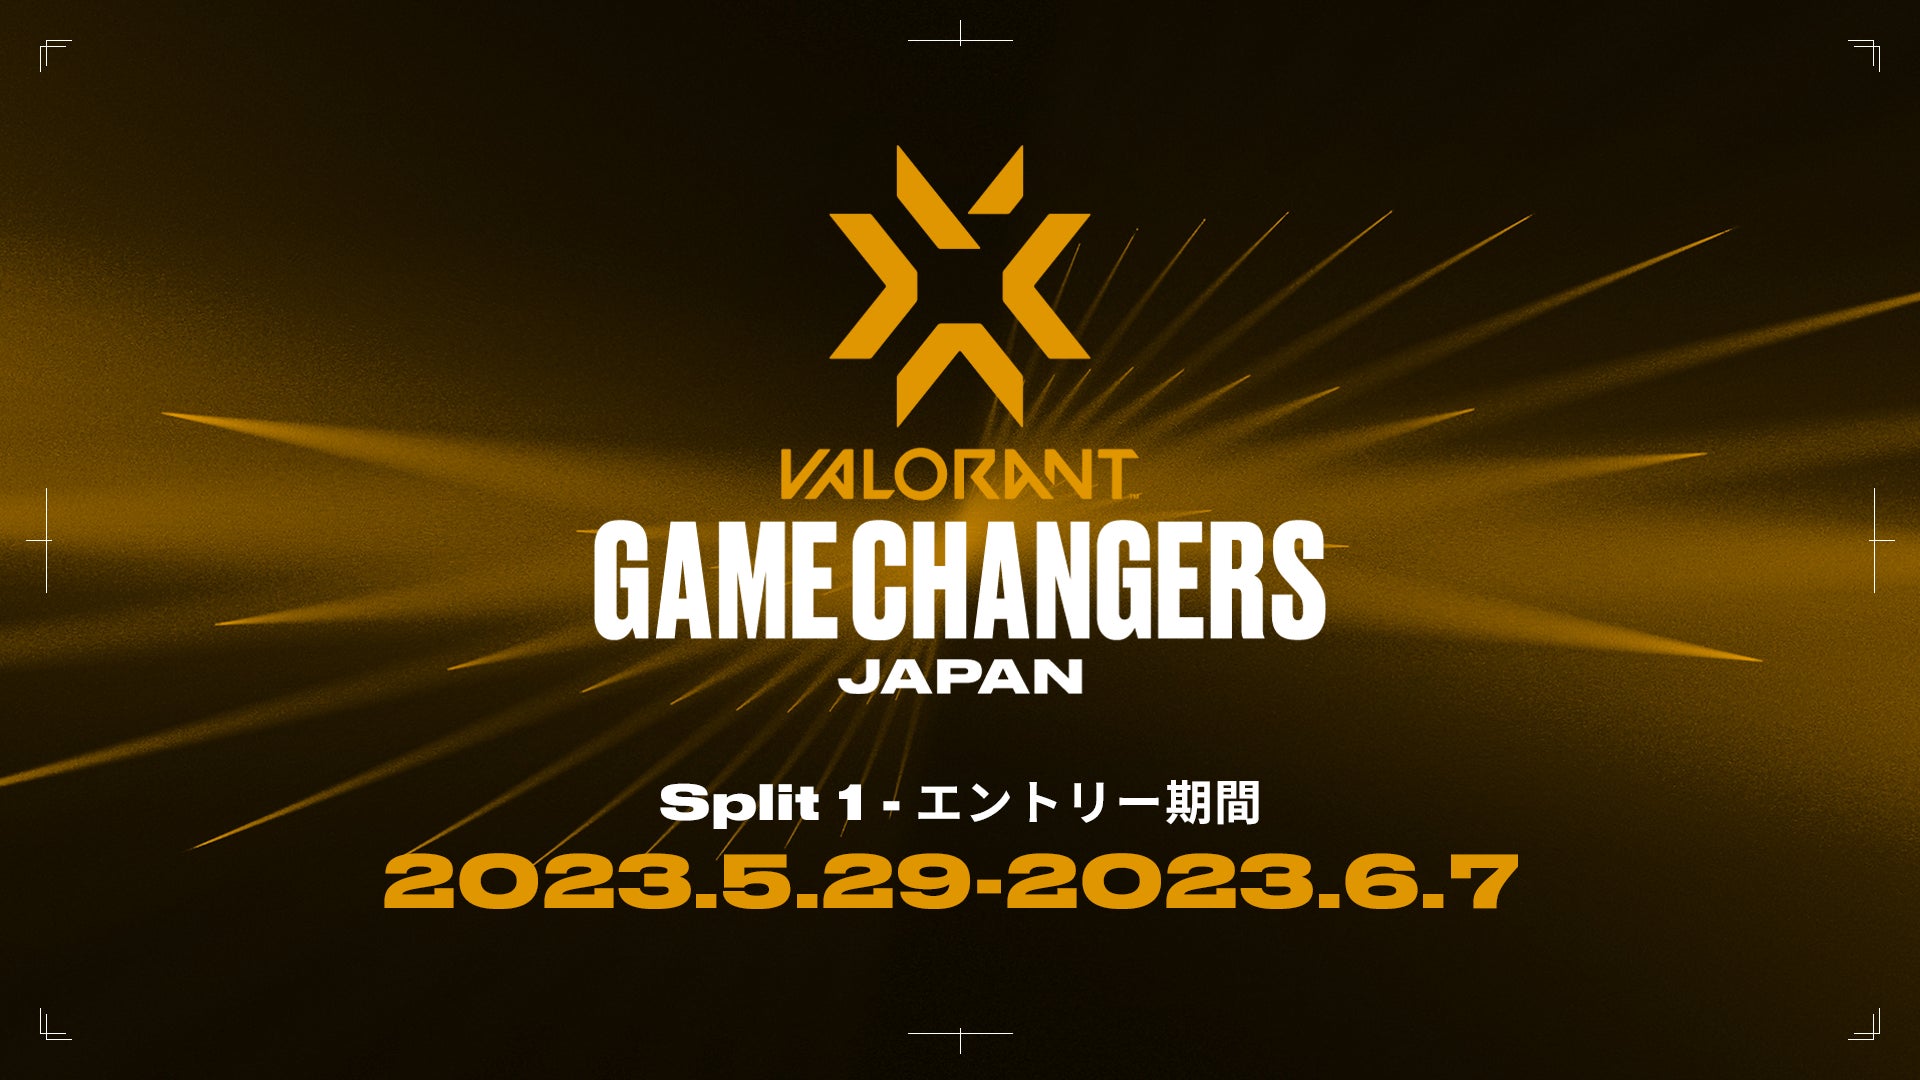 女性プレイヤーが活躍できる場を提供するために設立された「VALORANT Game Changers Japan 2023」のエントリー受付を開始！締切は6月7日（水）23:59まで！